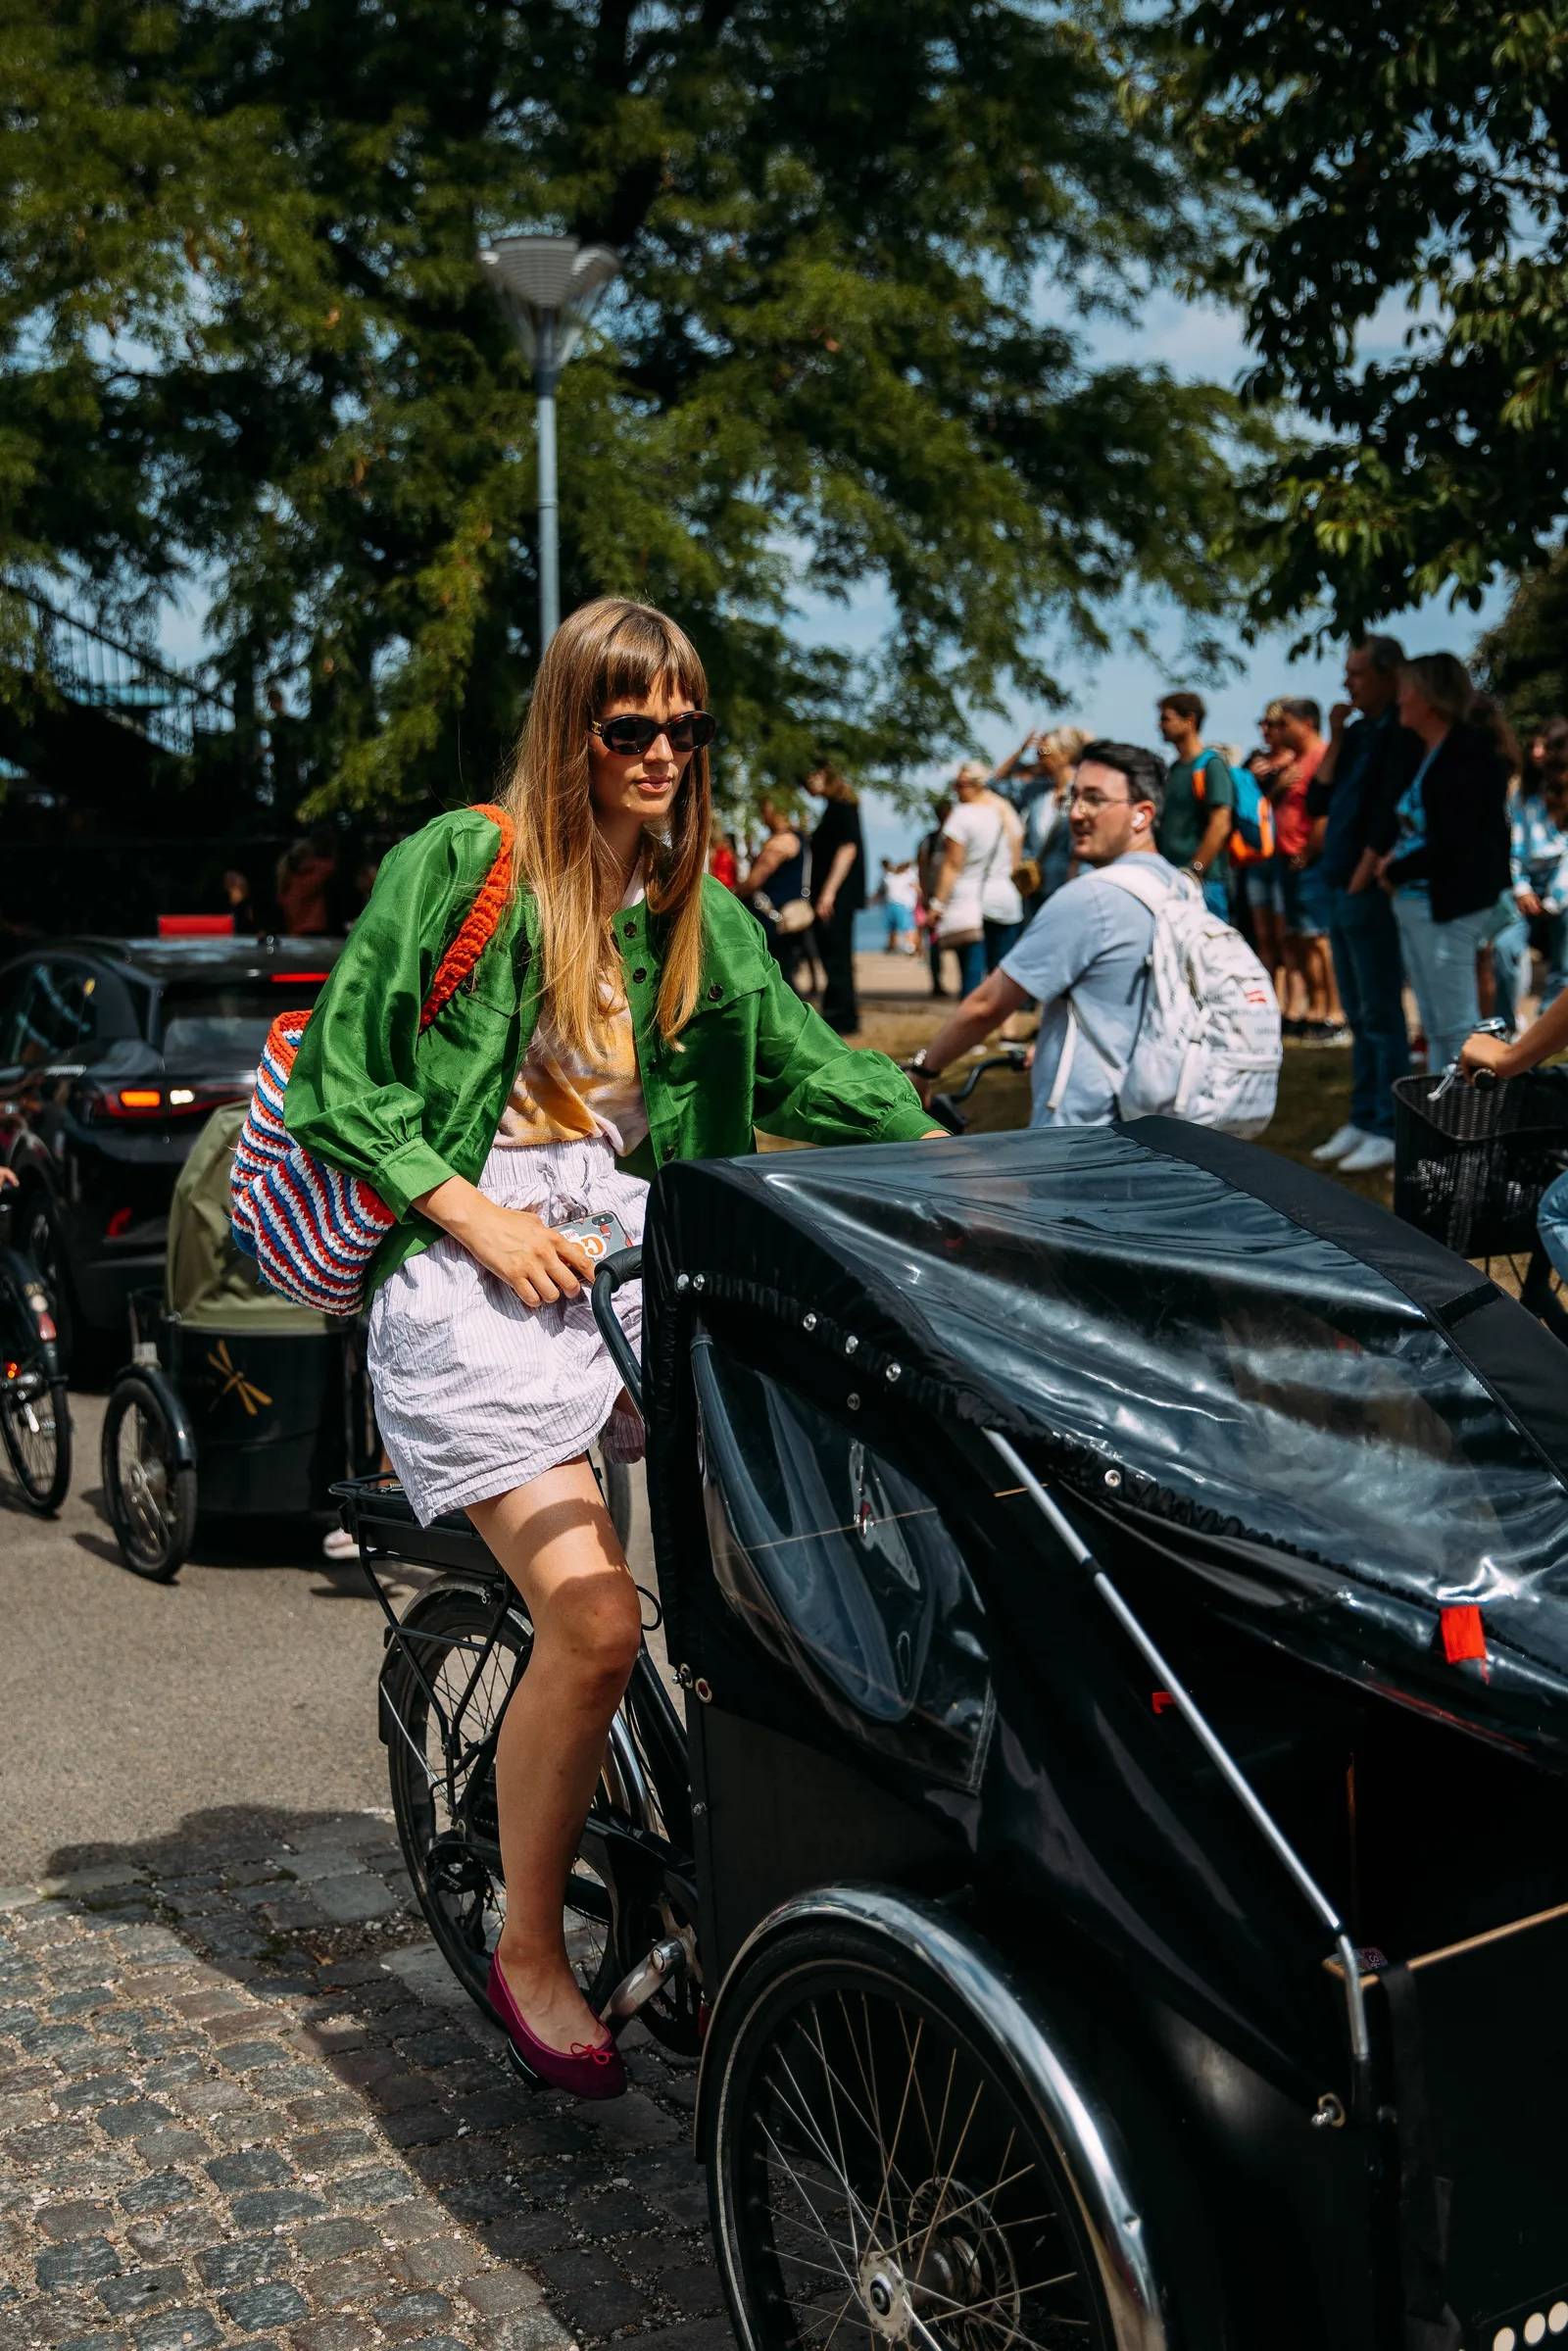 Kwintesencja street style’owego looku z Kopenhagi to bawełniane bokserki, baletki i rower będący jednocześnie wózkiem dla dziecka. / (Fot. Acielle Style du Monde)